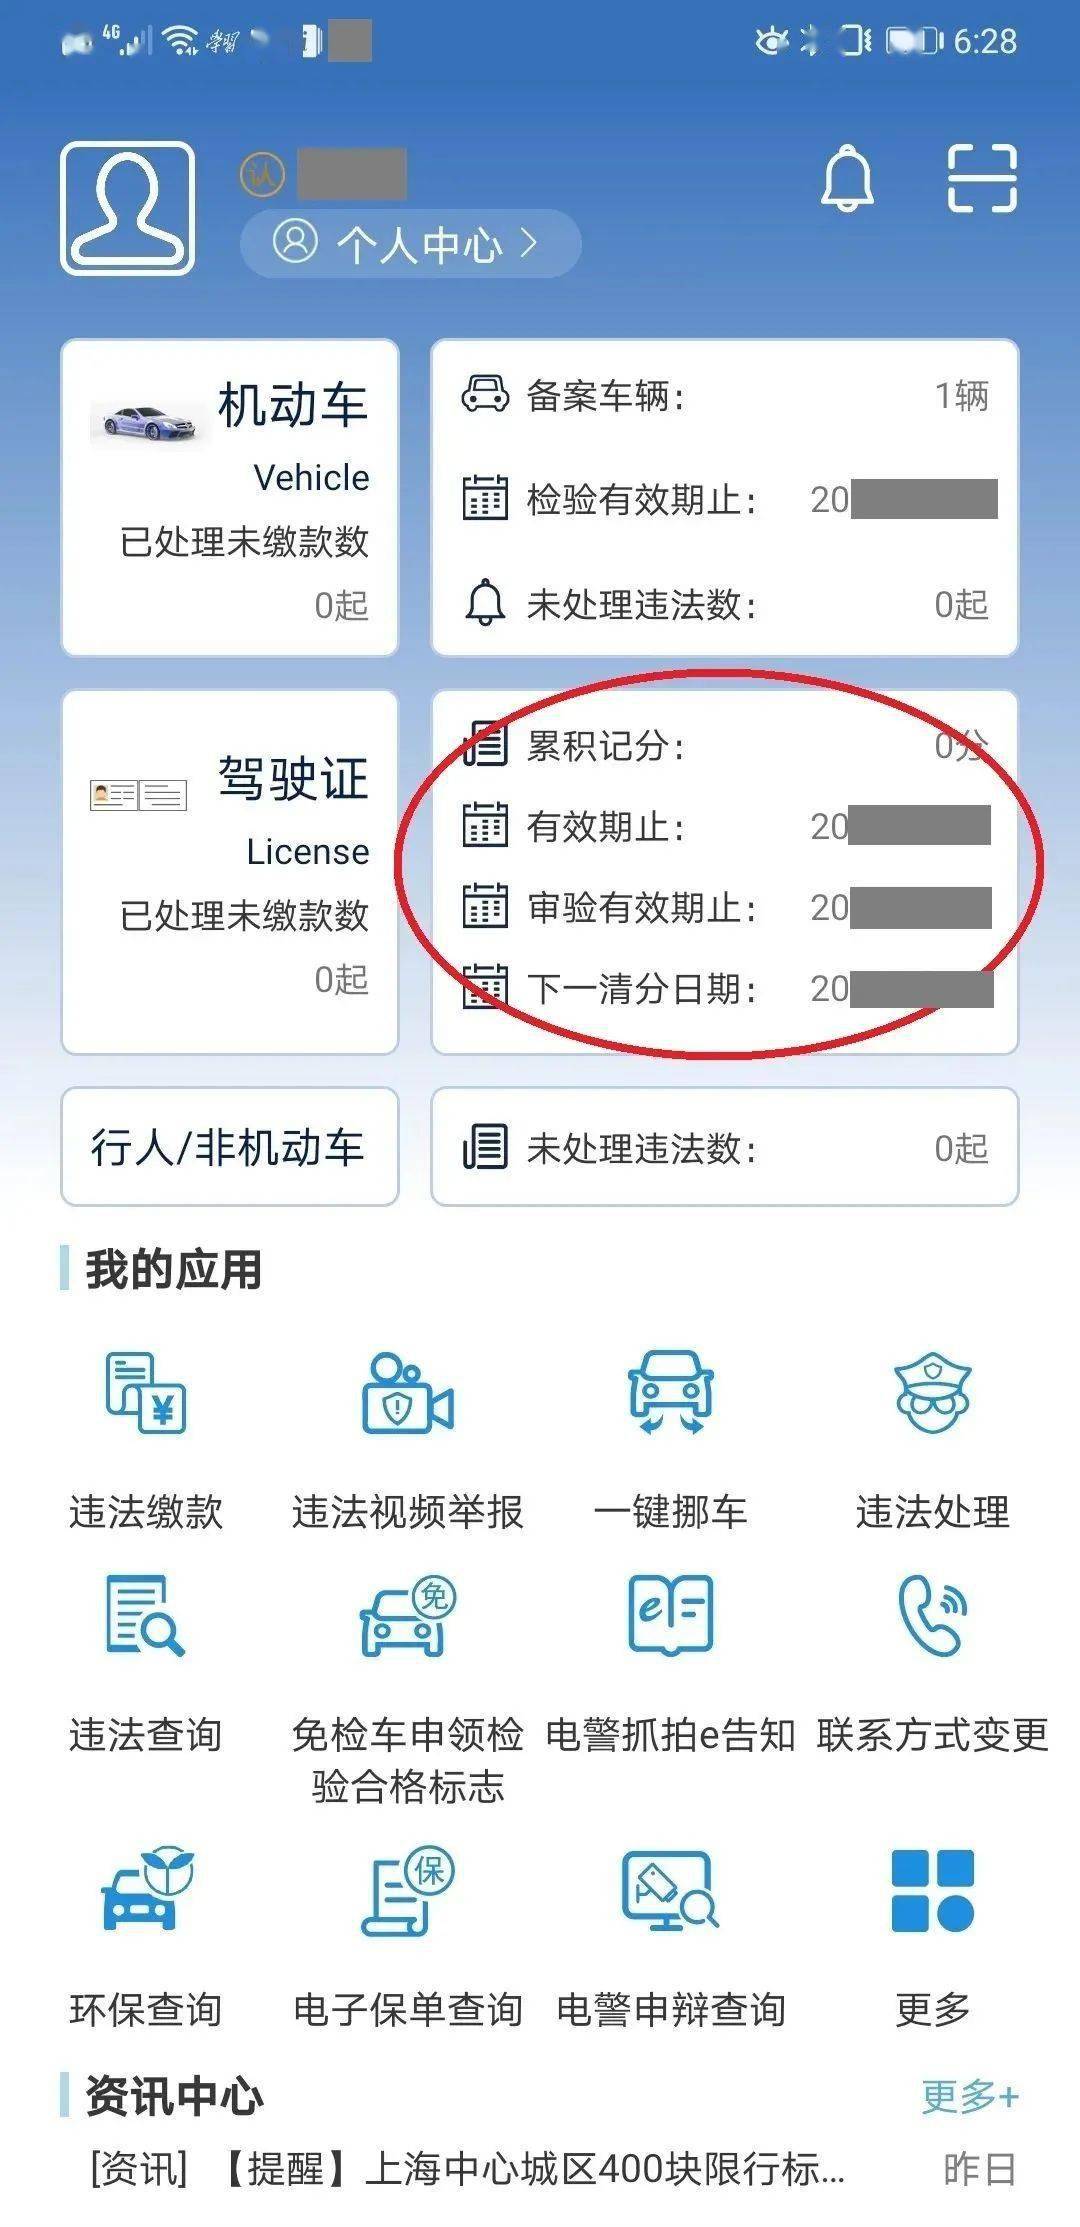 12:41 来源: 发现大上海02 上海交警app电子亮证 电子驾驶证亮证